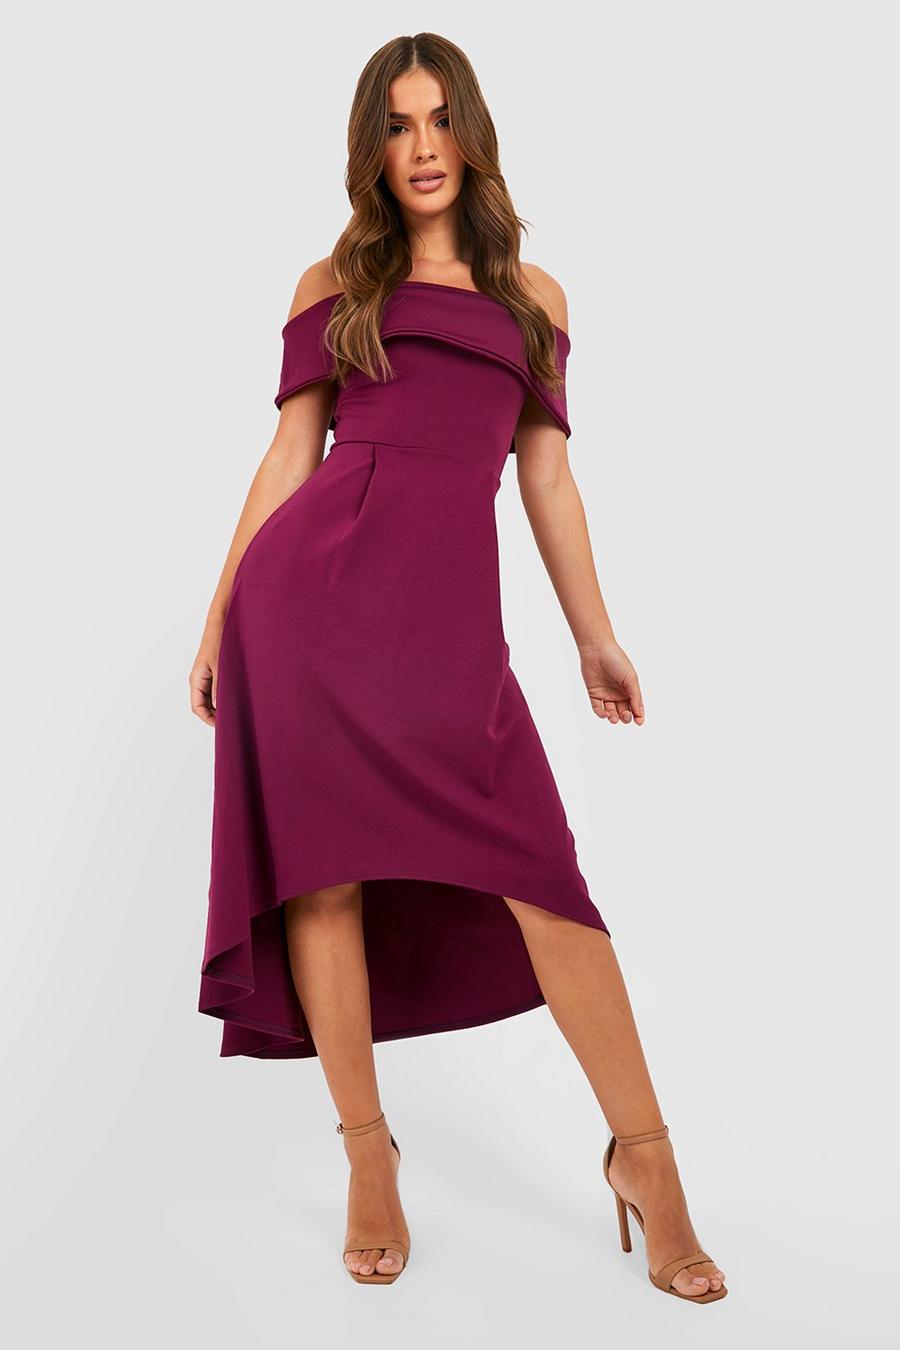 Jewel purple Off The Shoulder Dip Hem Skater Dress